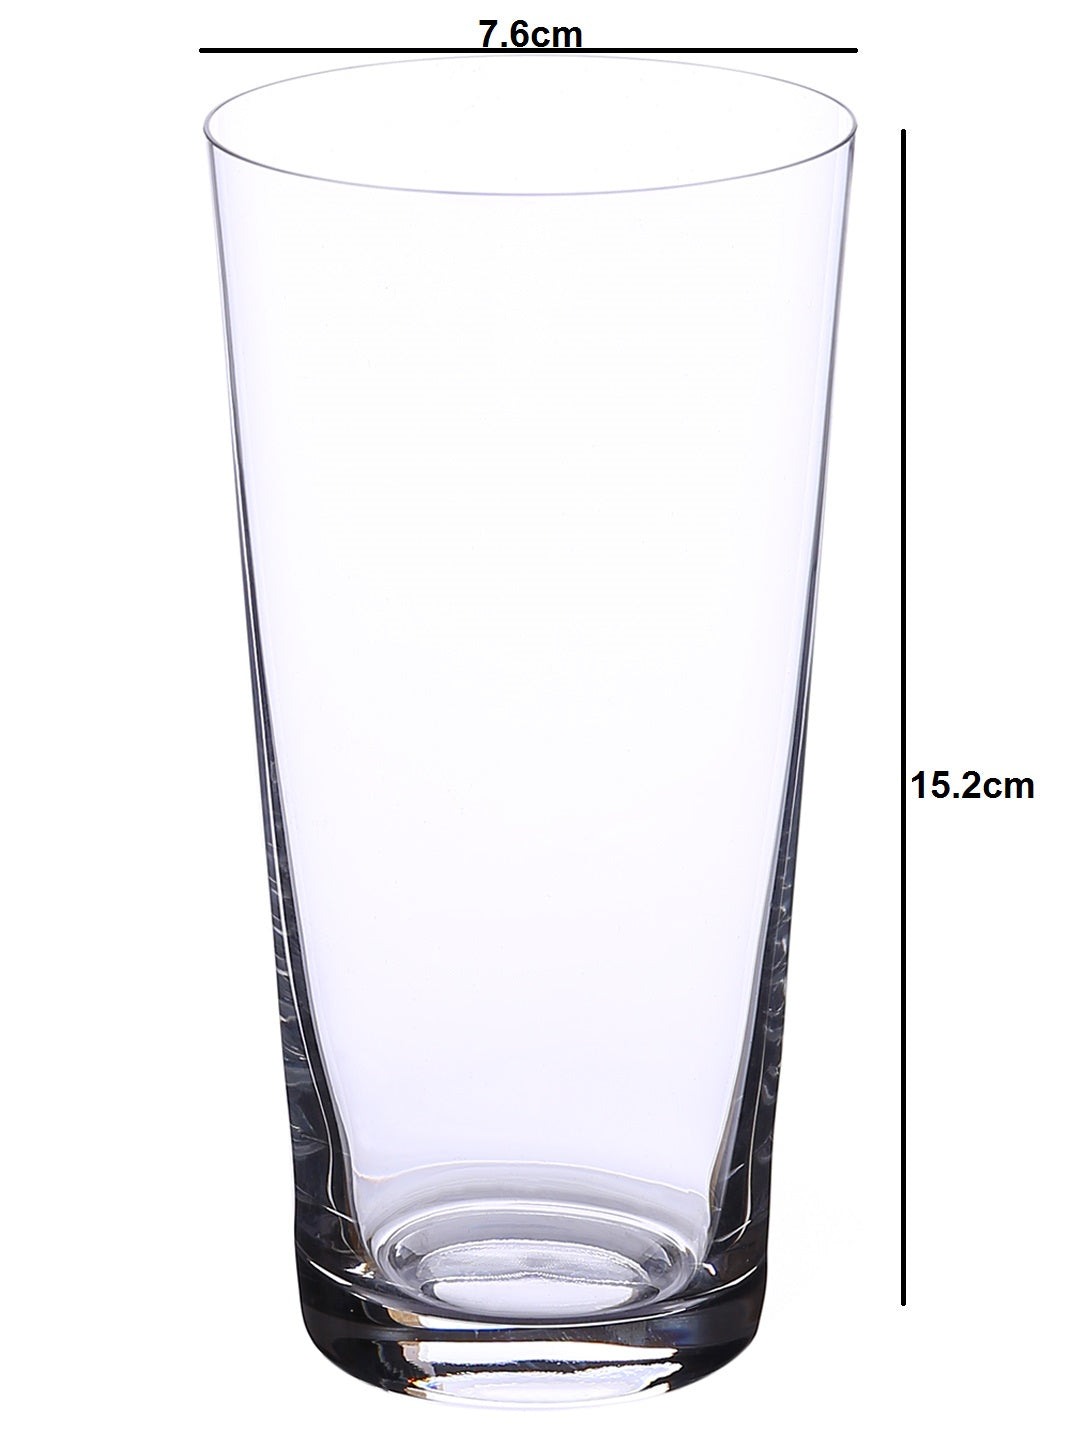 Dimensions of Versatile Beverage Glass Set - Ideal for cocktails, mocktails, juice, and more.